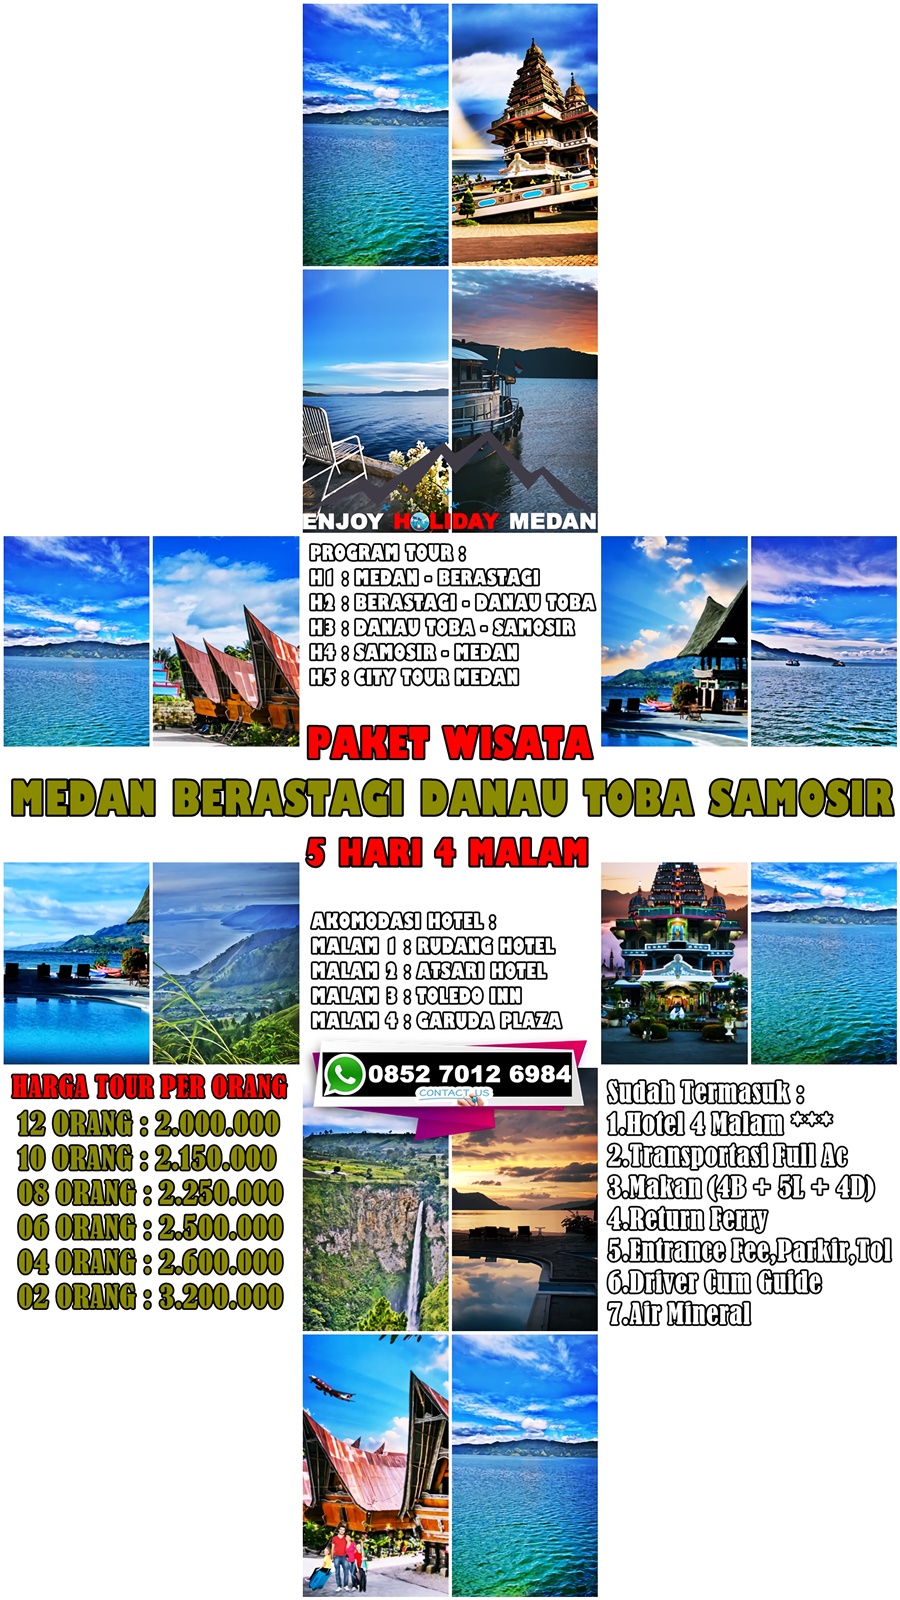 5D4N Silangit Lake Toba Tour Package